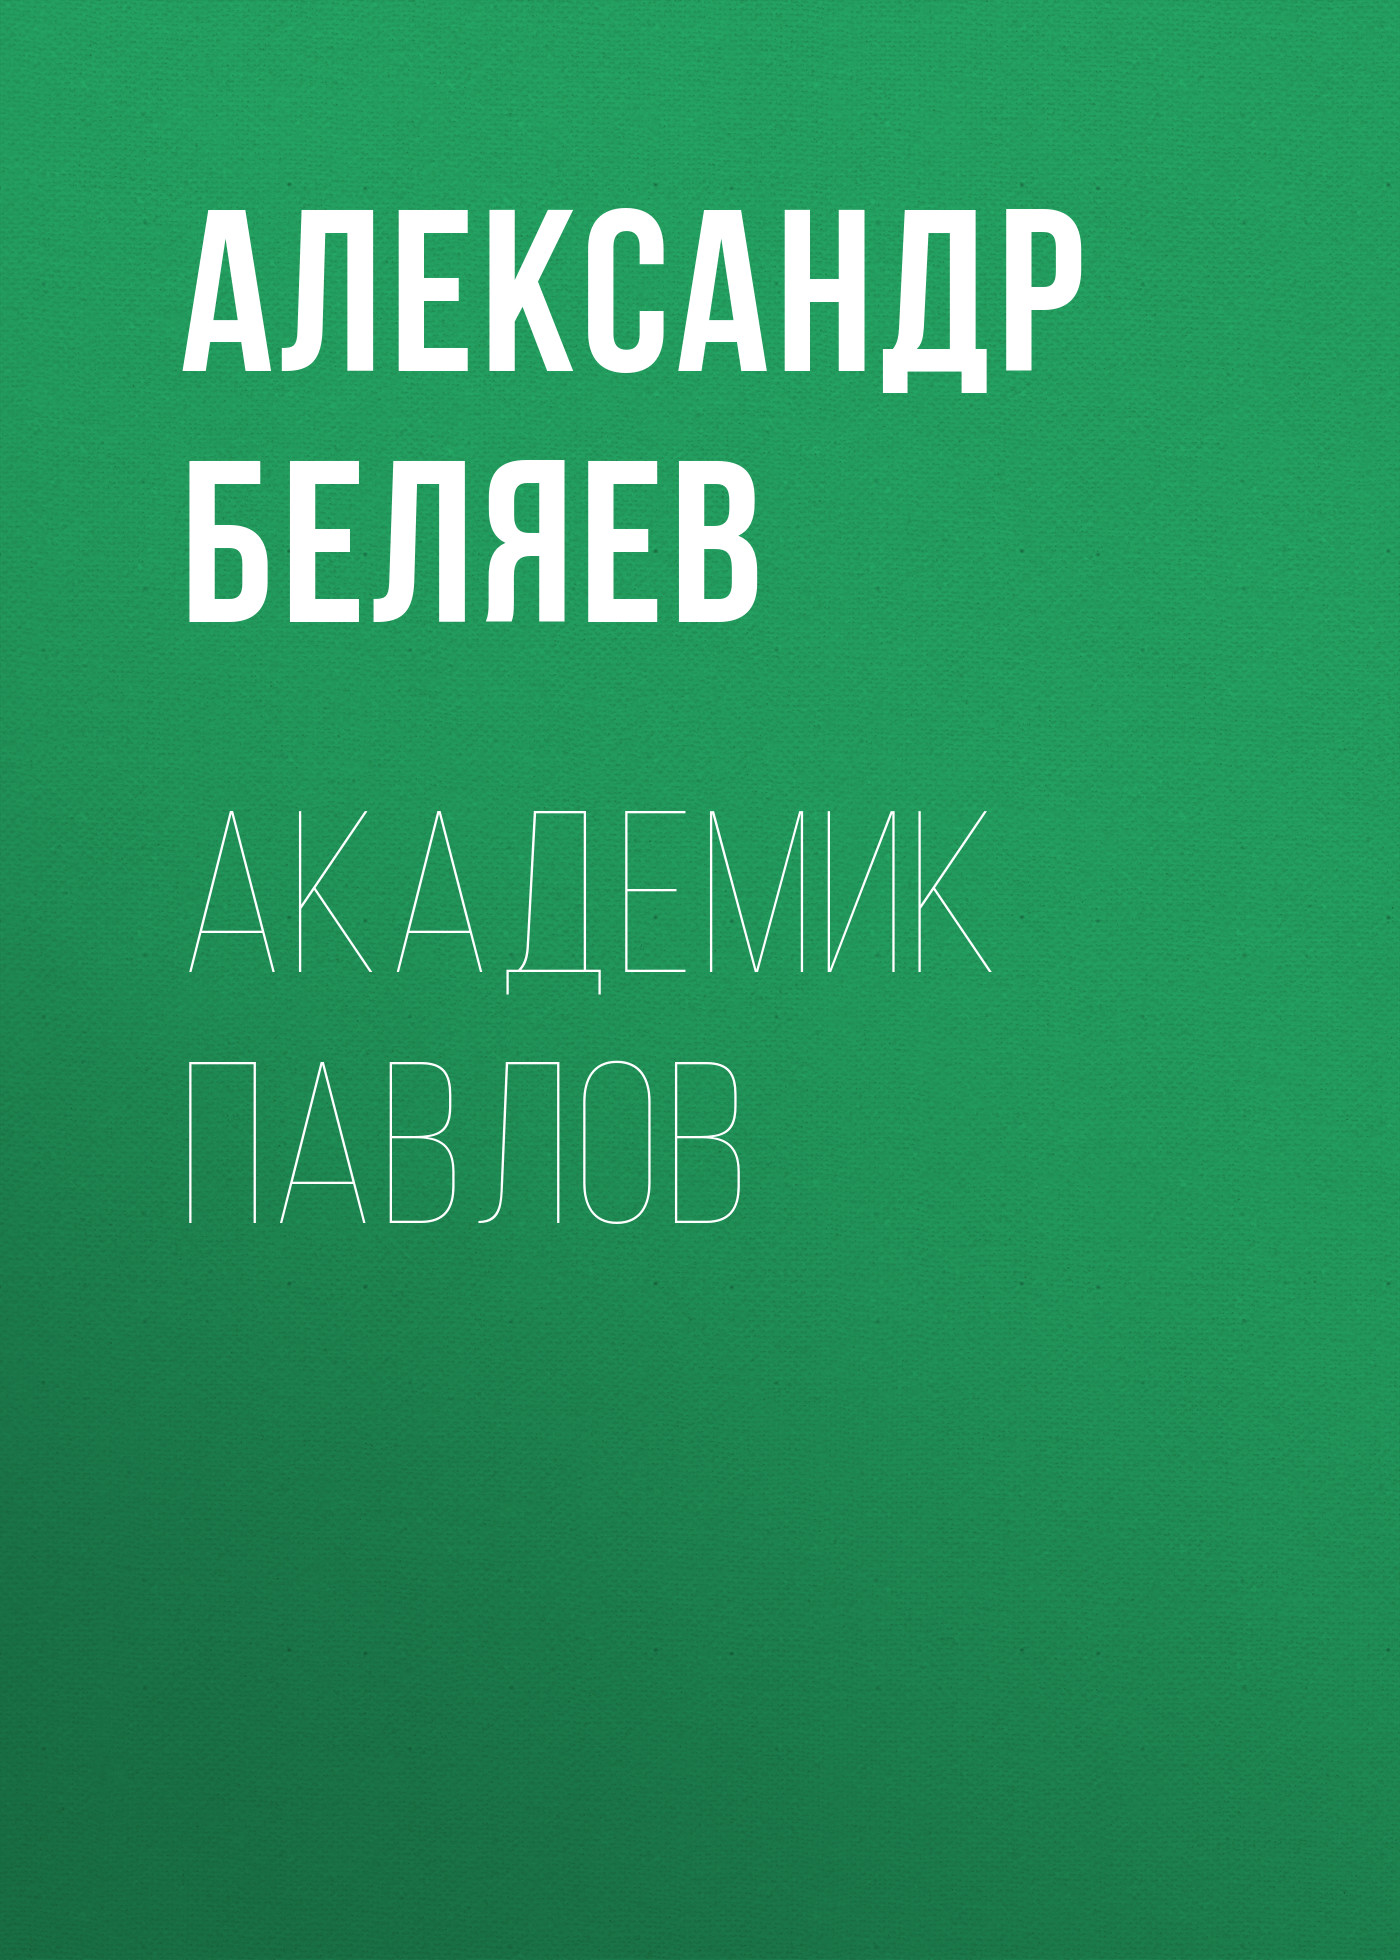 Книга Академик Павлов из серии , созданная Александр Беляев, может относится к жанру Критика. Стоимость электронной книги Академик Павлов с идентификатором 24920941 составляет 5.99 руб.